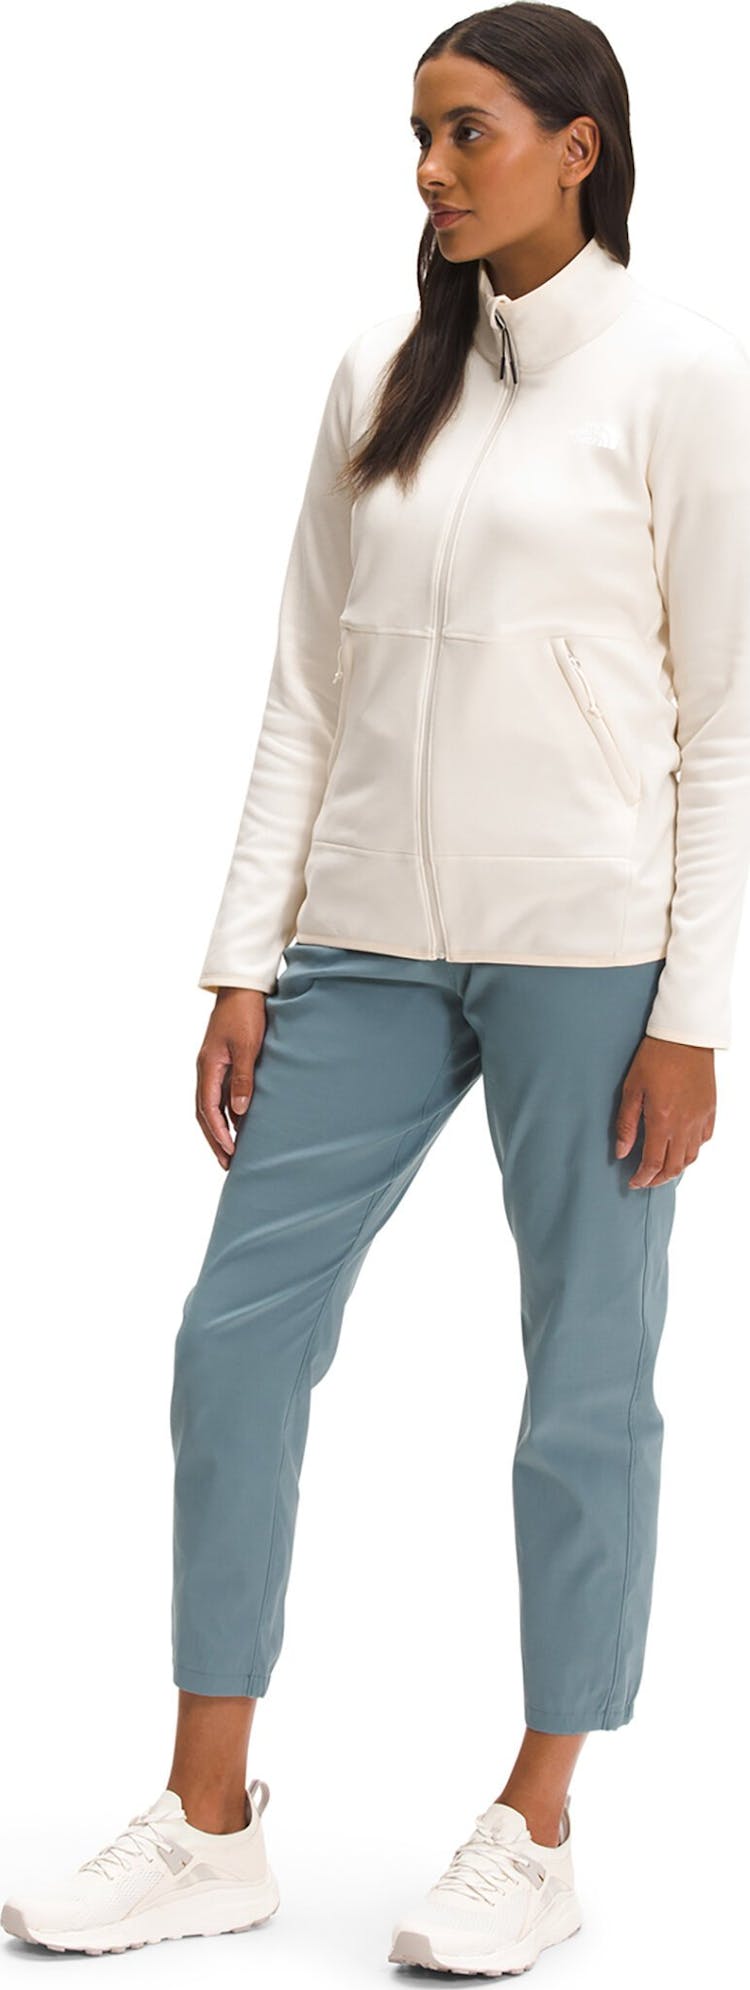 Product gallery image number 4 for product Canyonlands Full Zip Fleece Sweatshirt - Women's